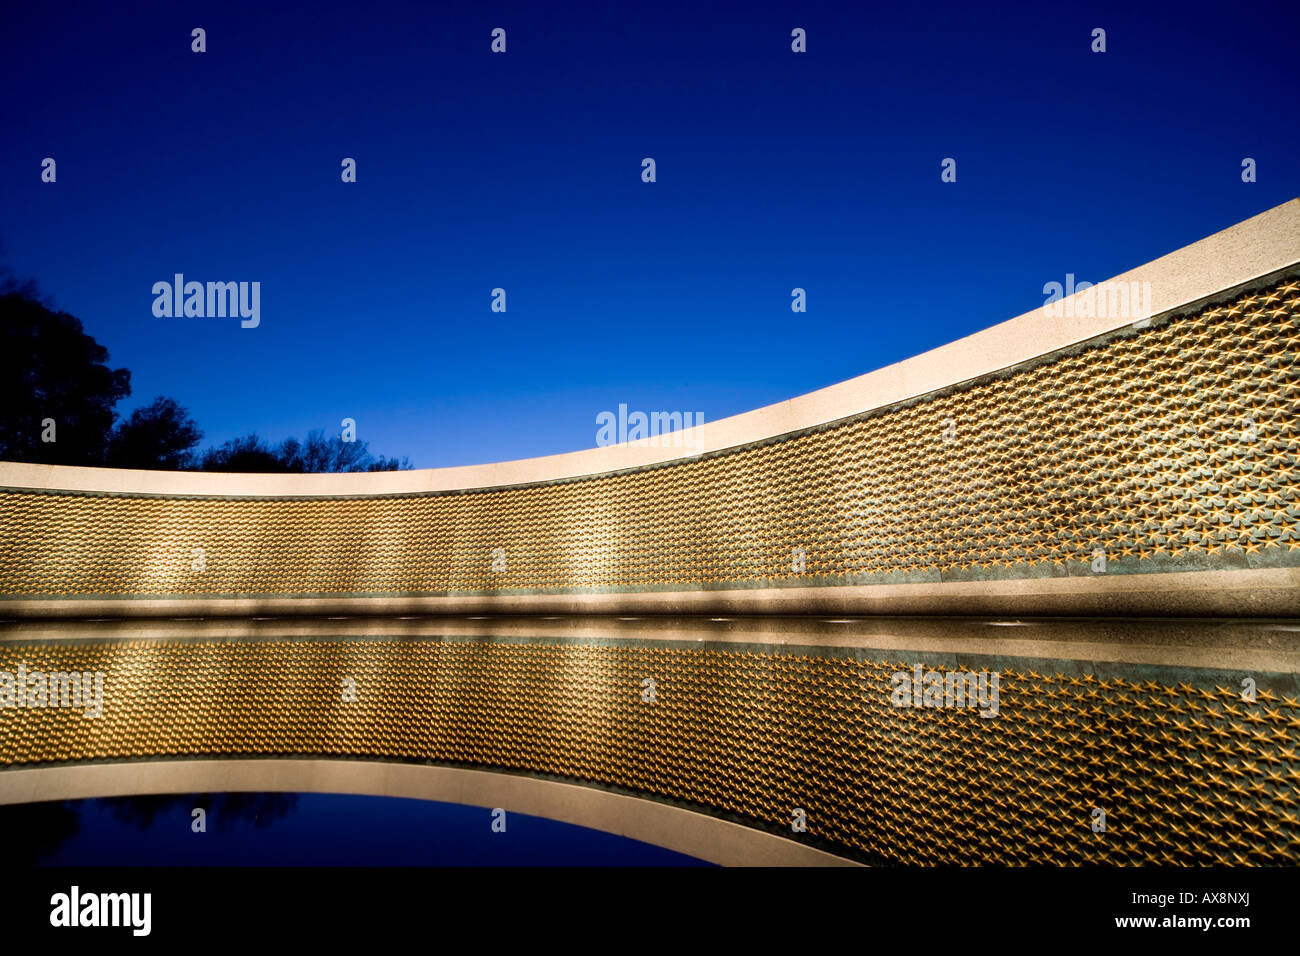 La parete di libertà a livello nazionale il Memoriale della Seconda Guerra Mondiale al tramonto, Washington D.C. Siamo stati uniti d'America Foto Stock